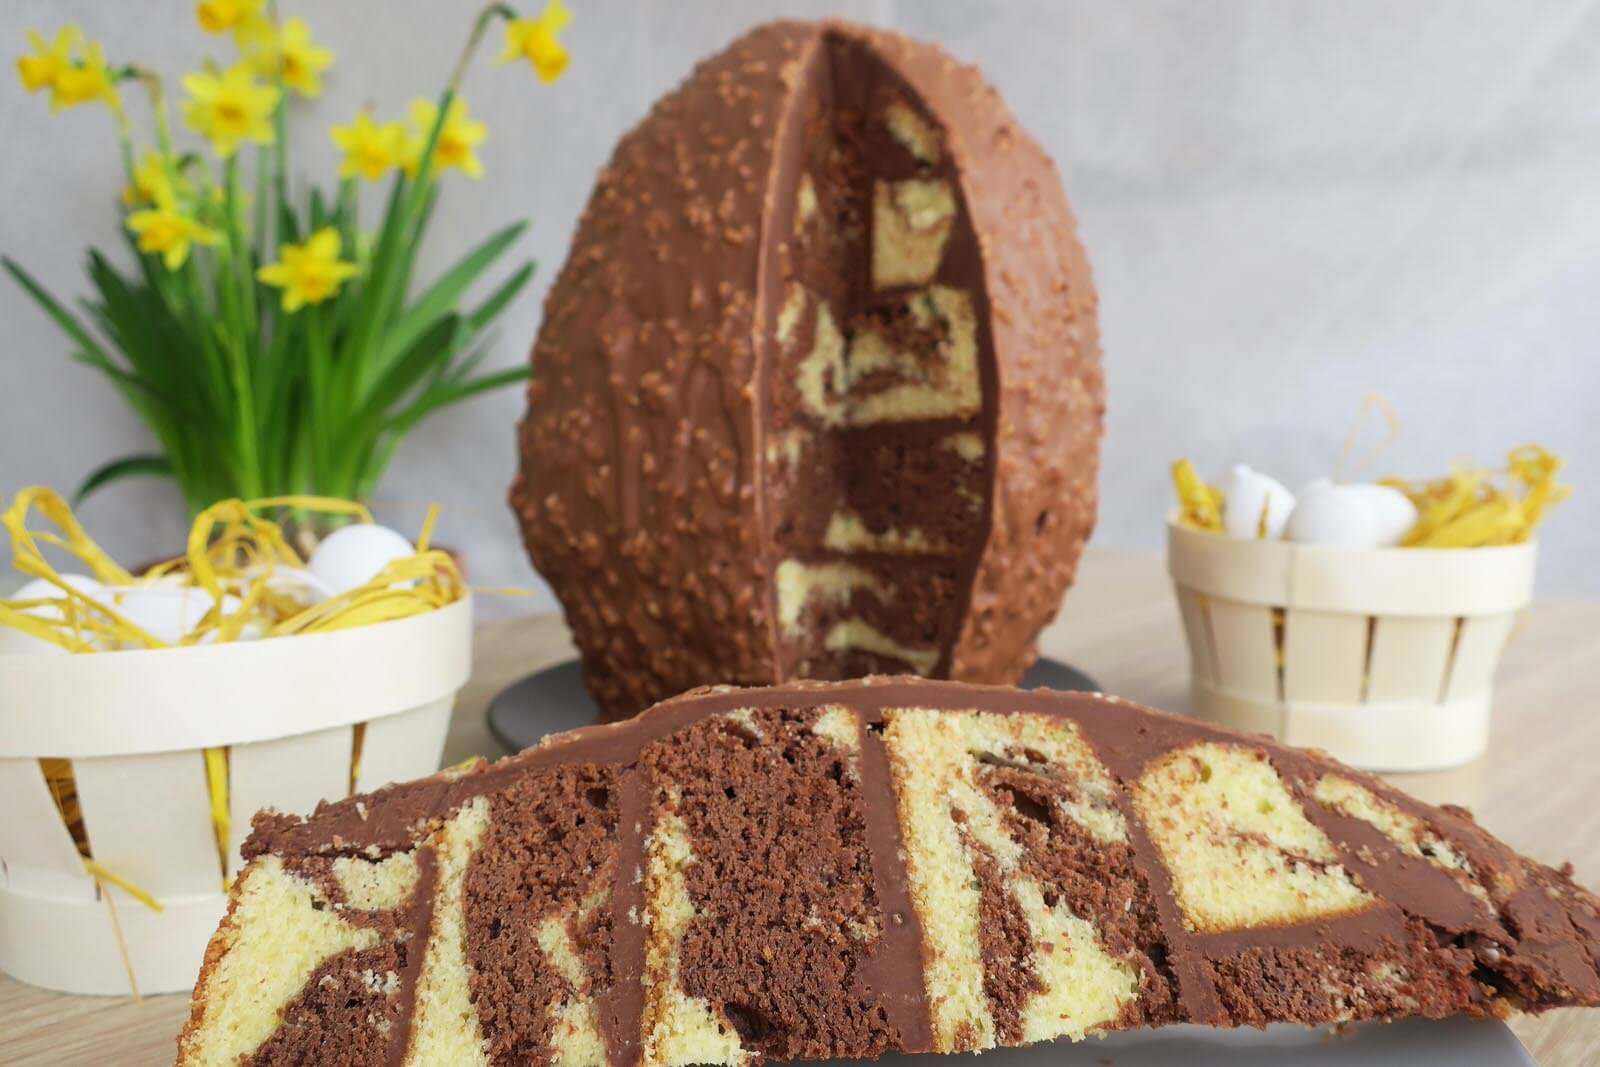 Ferrero Rocher dévoile son œuf de Pâques au chocolat noir - Faire